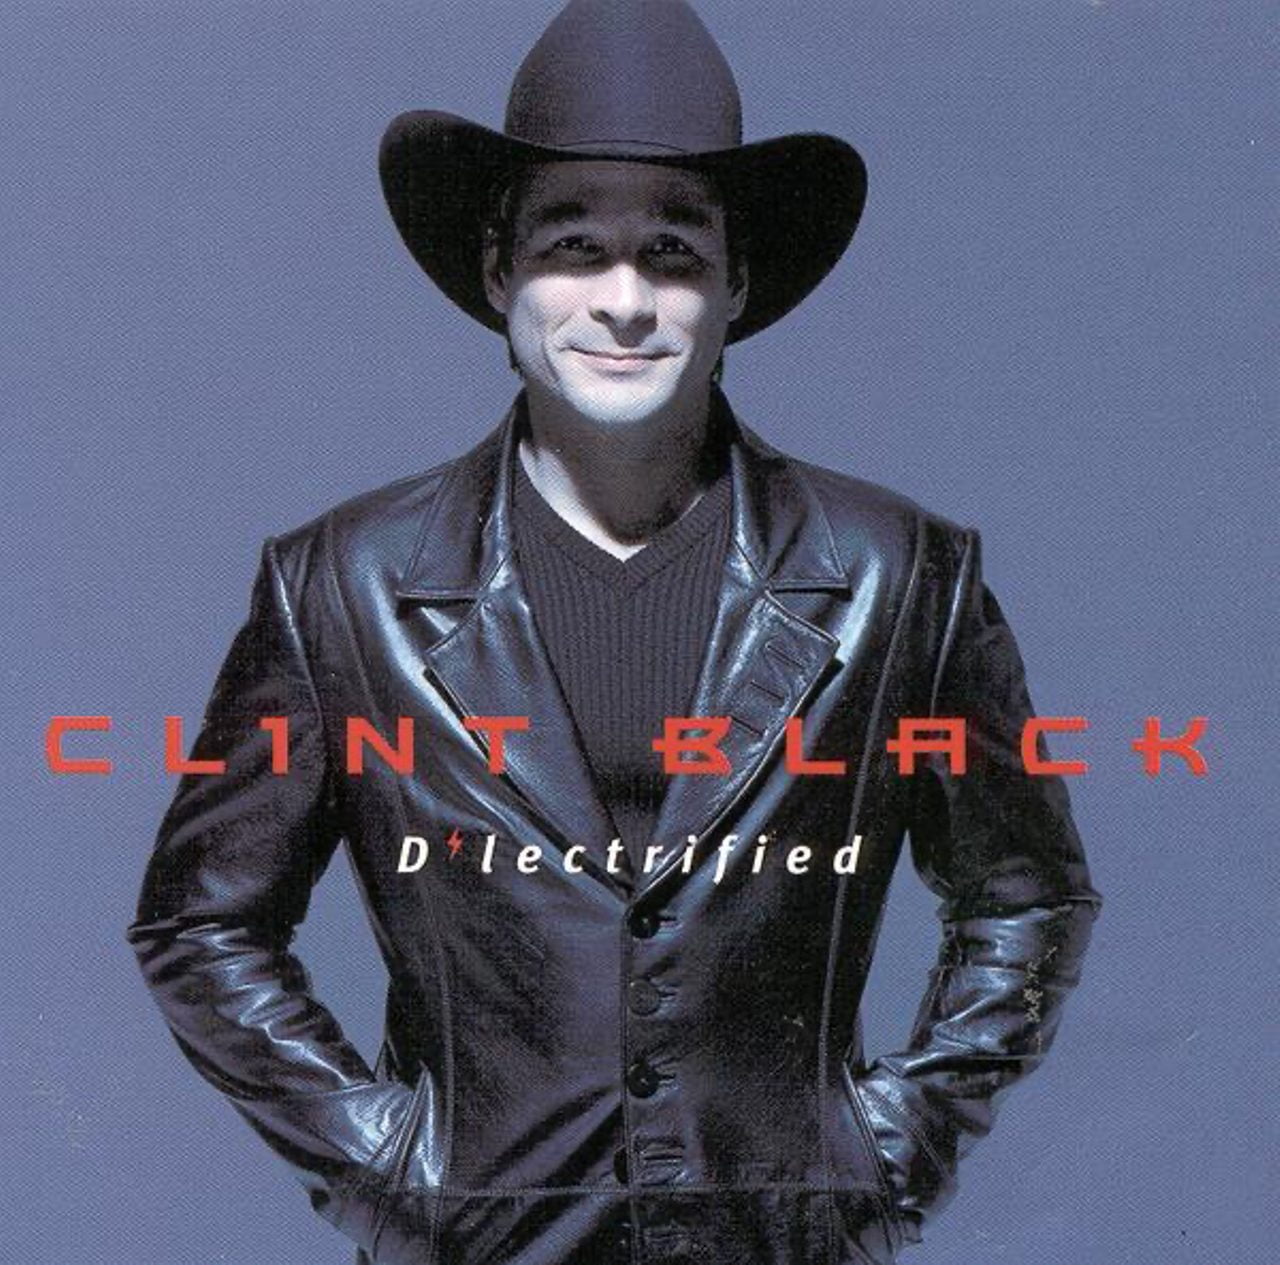 Clint Black – D’lectrified cover album